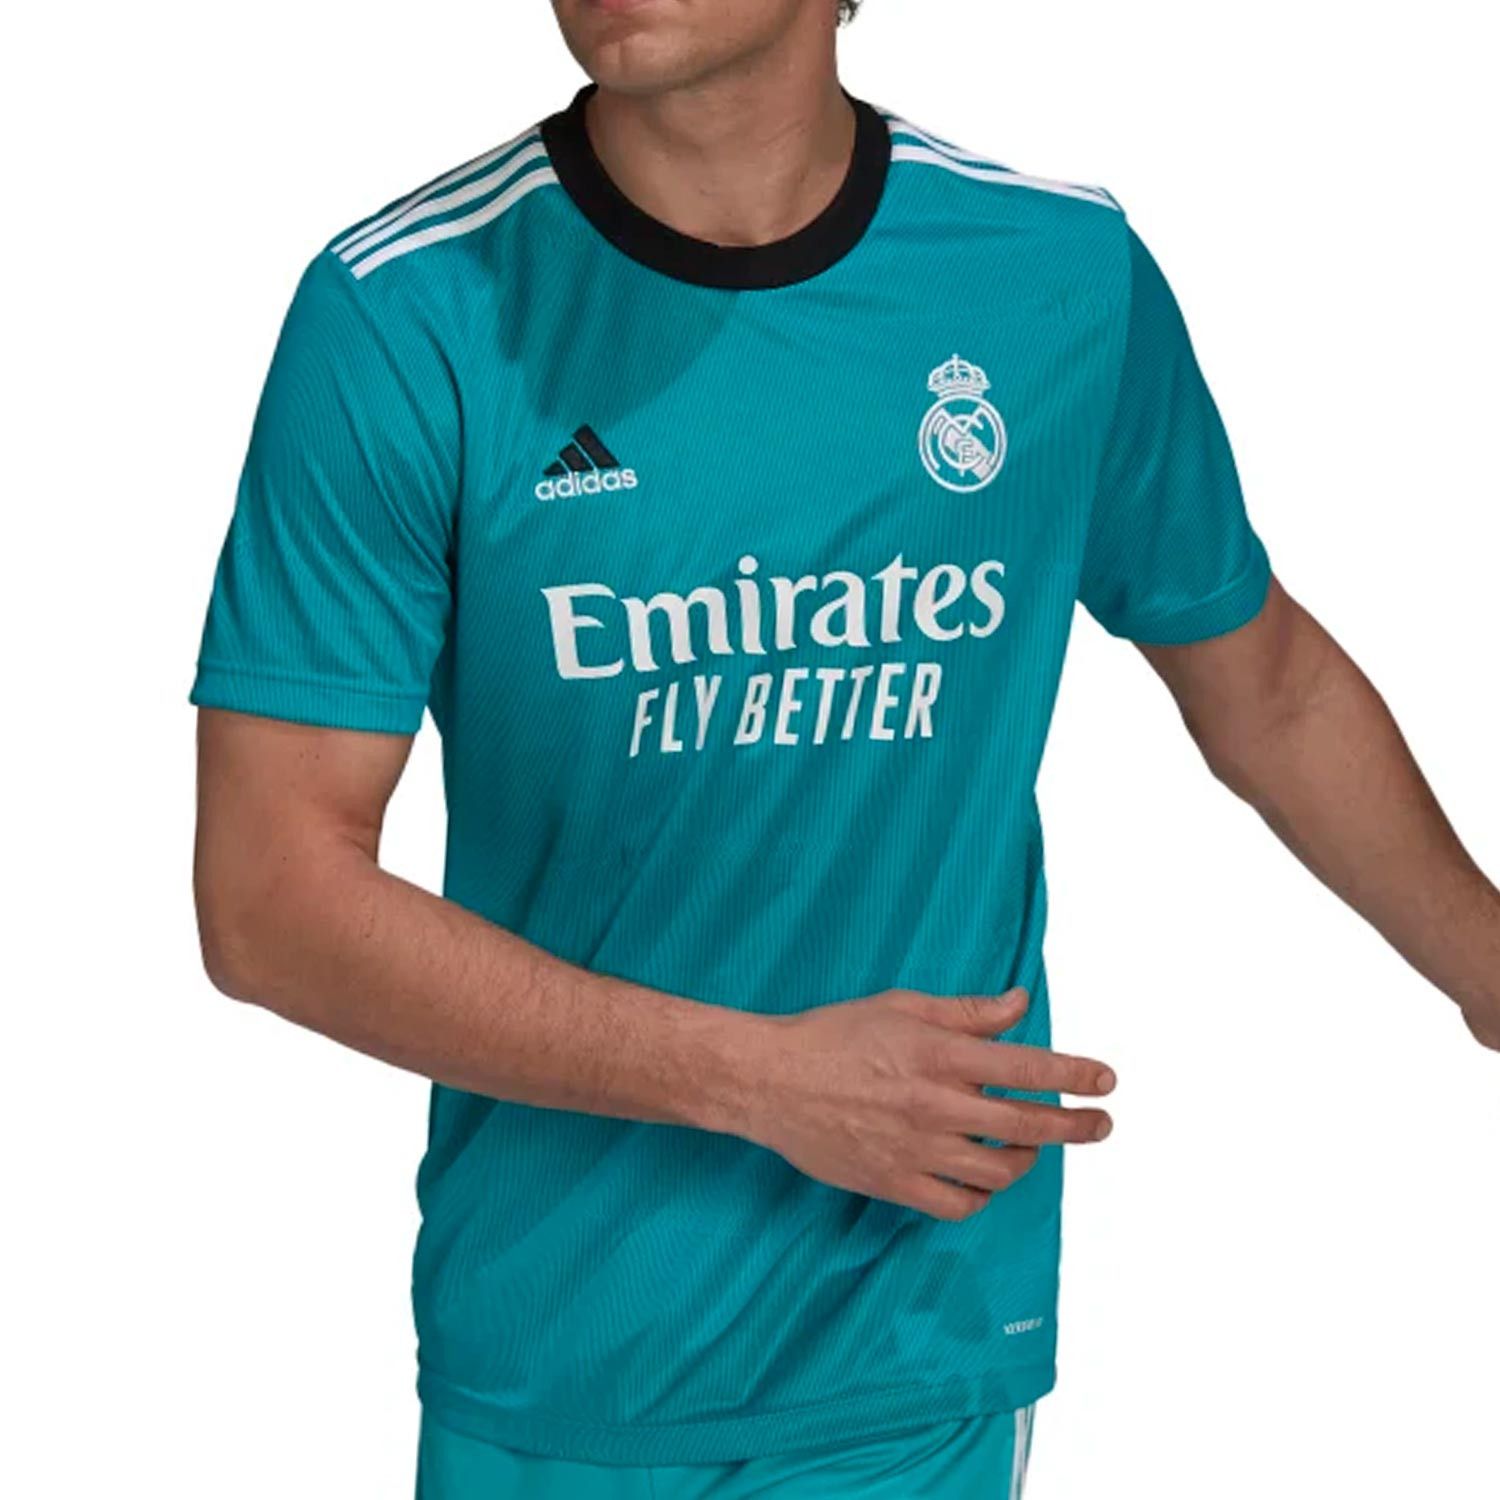 Deportista comedia cansado Camiseta adidas Real Madrid 3a 21 22 turquesa | futbolmania